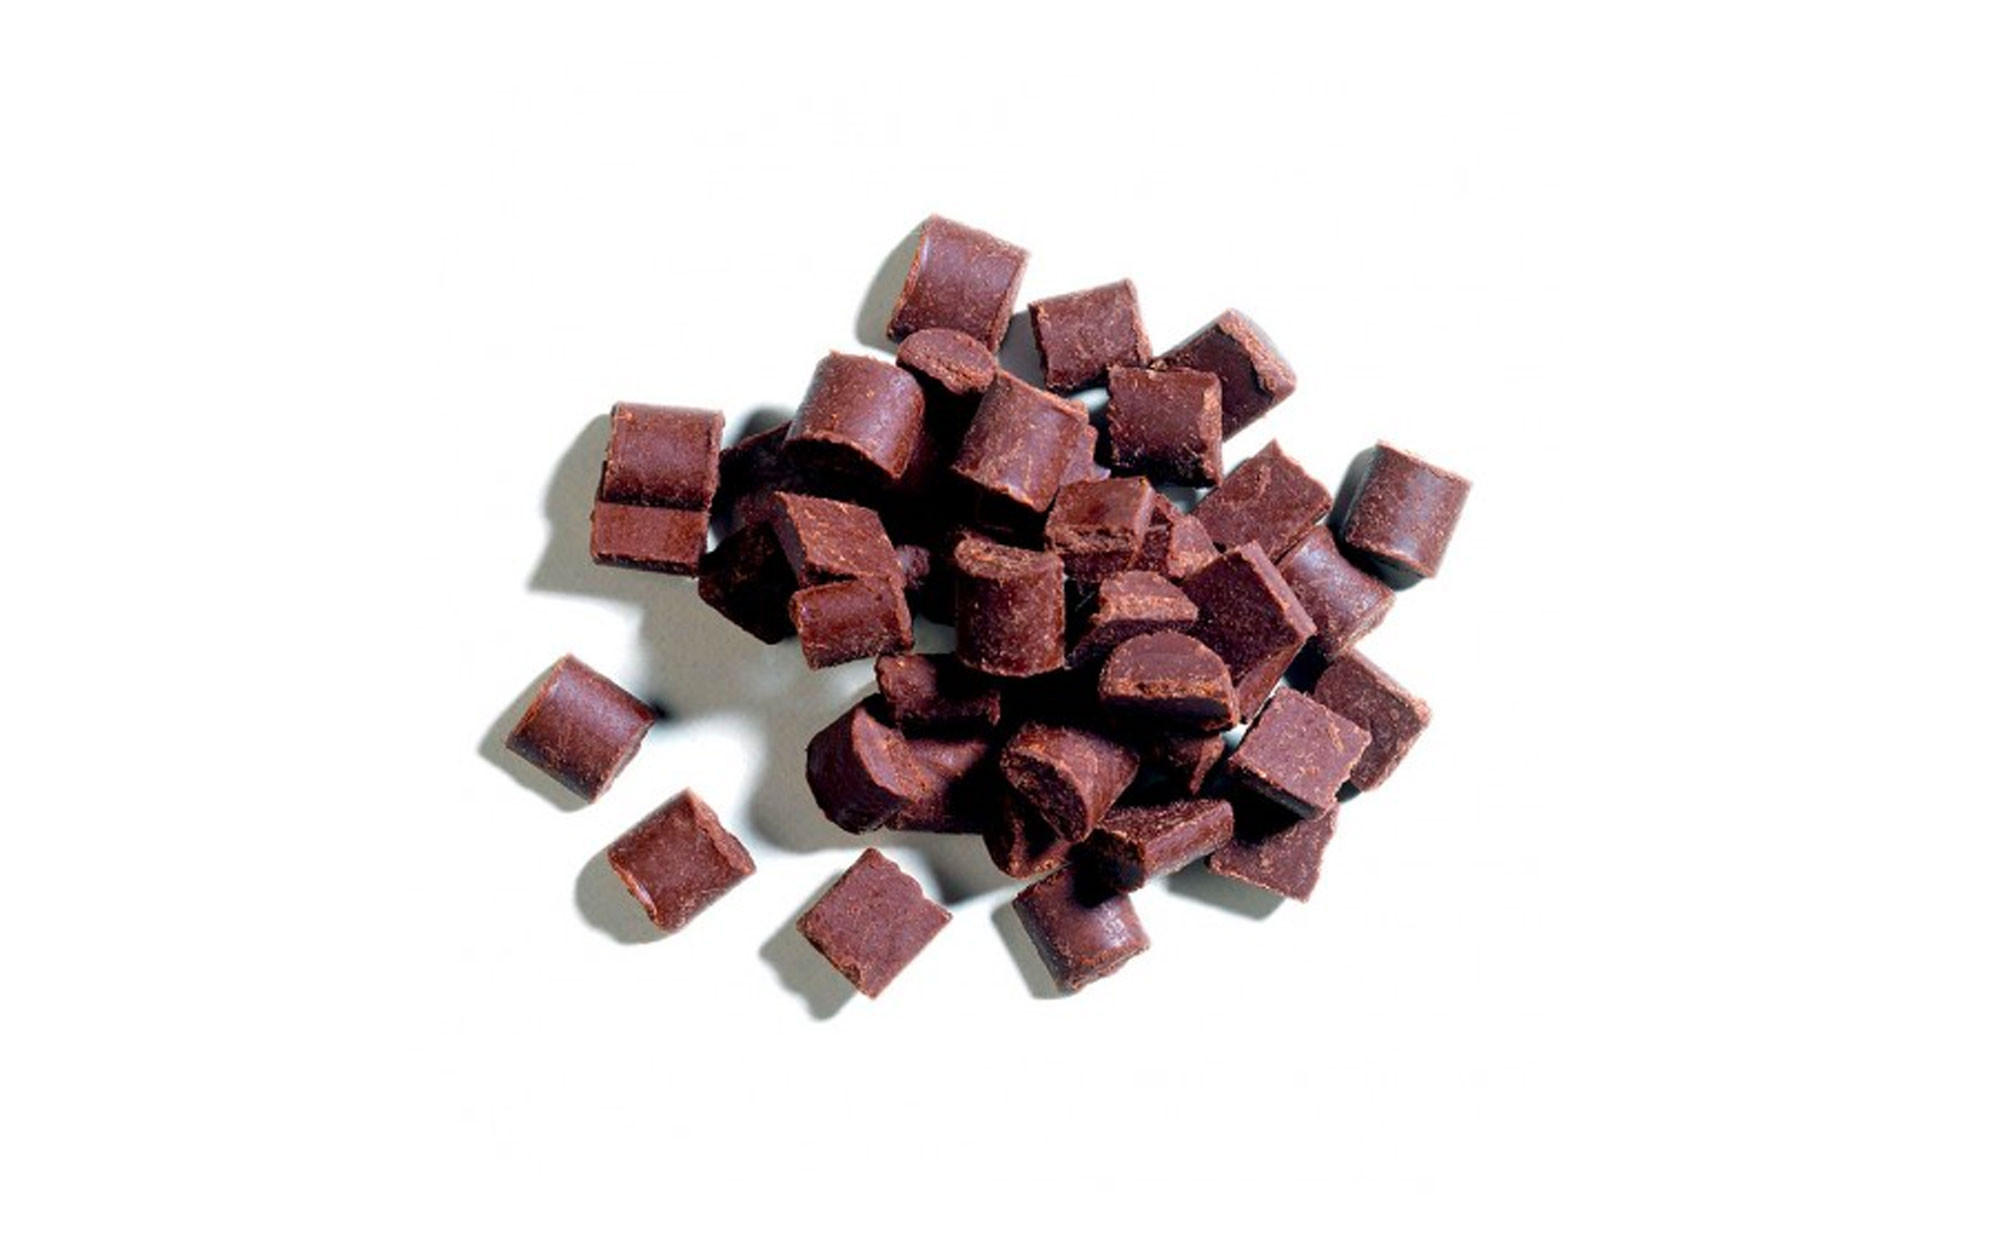 Chunks chocolat noir Callebaut disponible sur notre site colichef